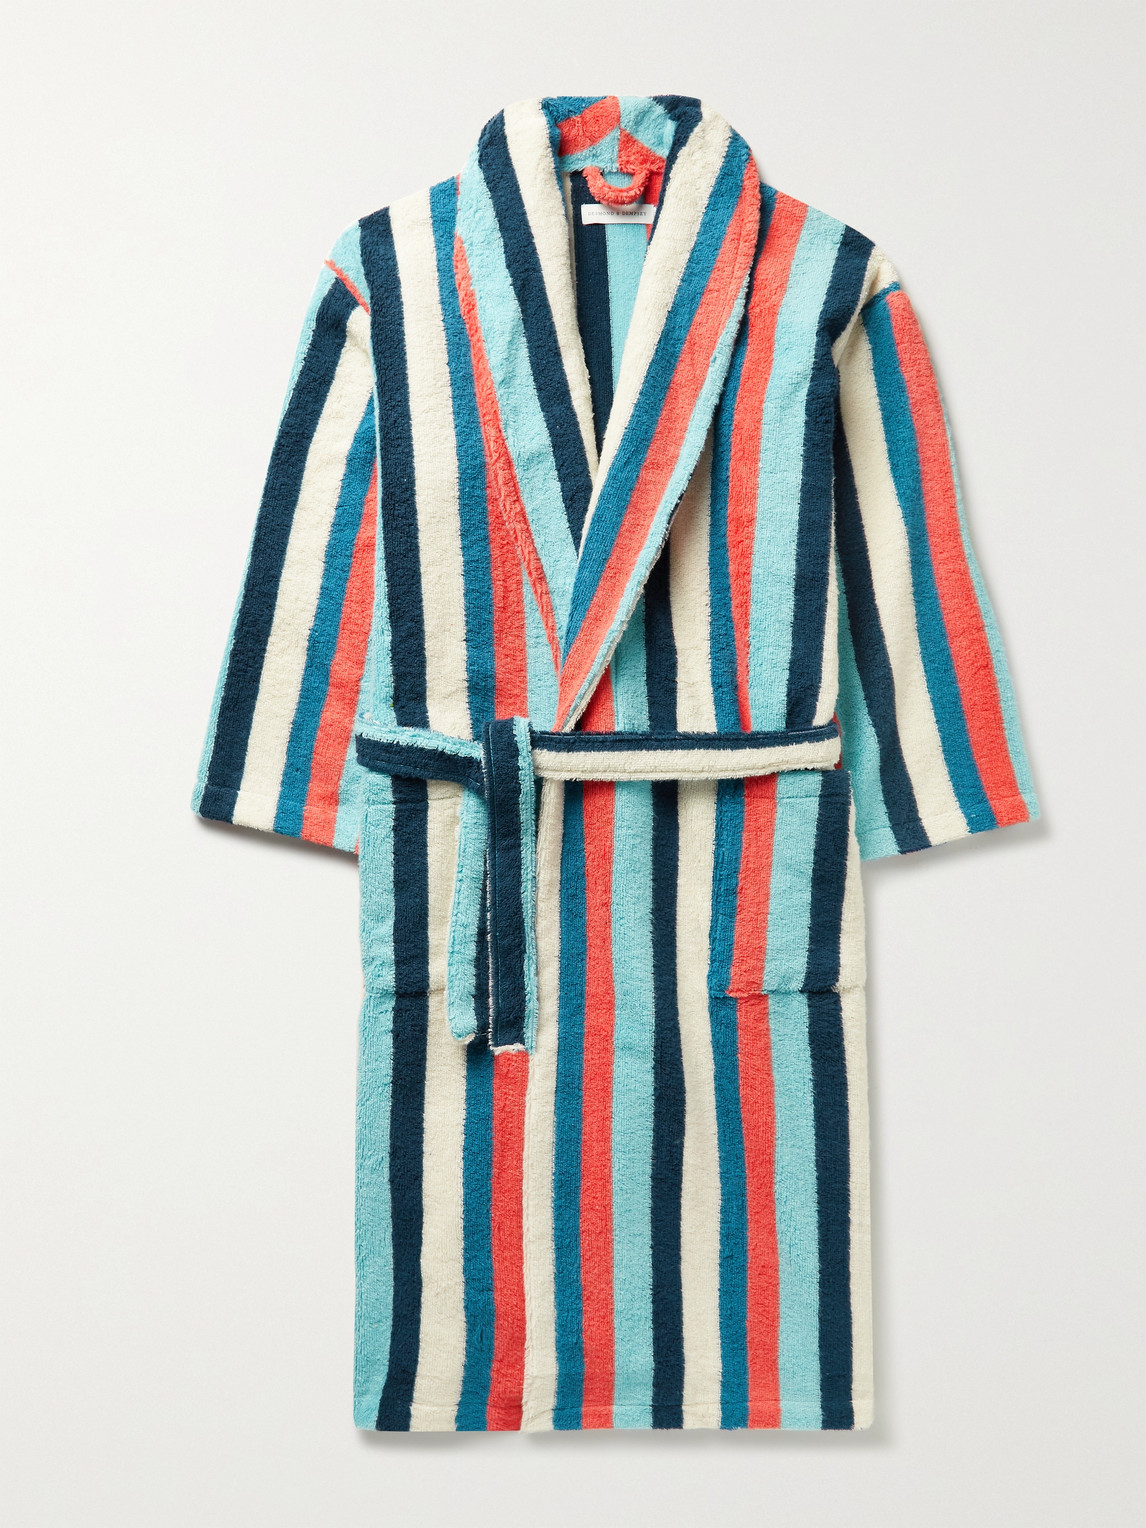 Desmond & Dempsey Medina Striped Cotton-terry Robe In Multi